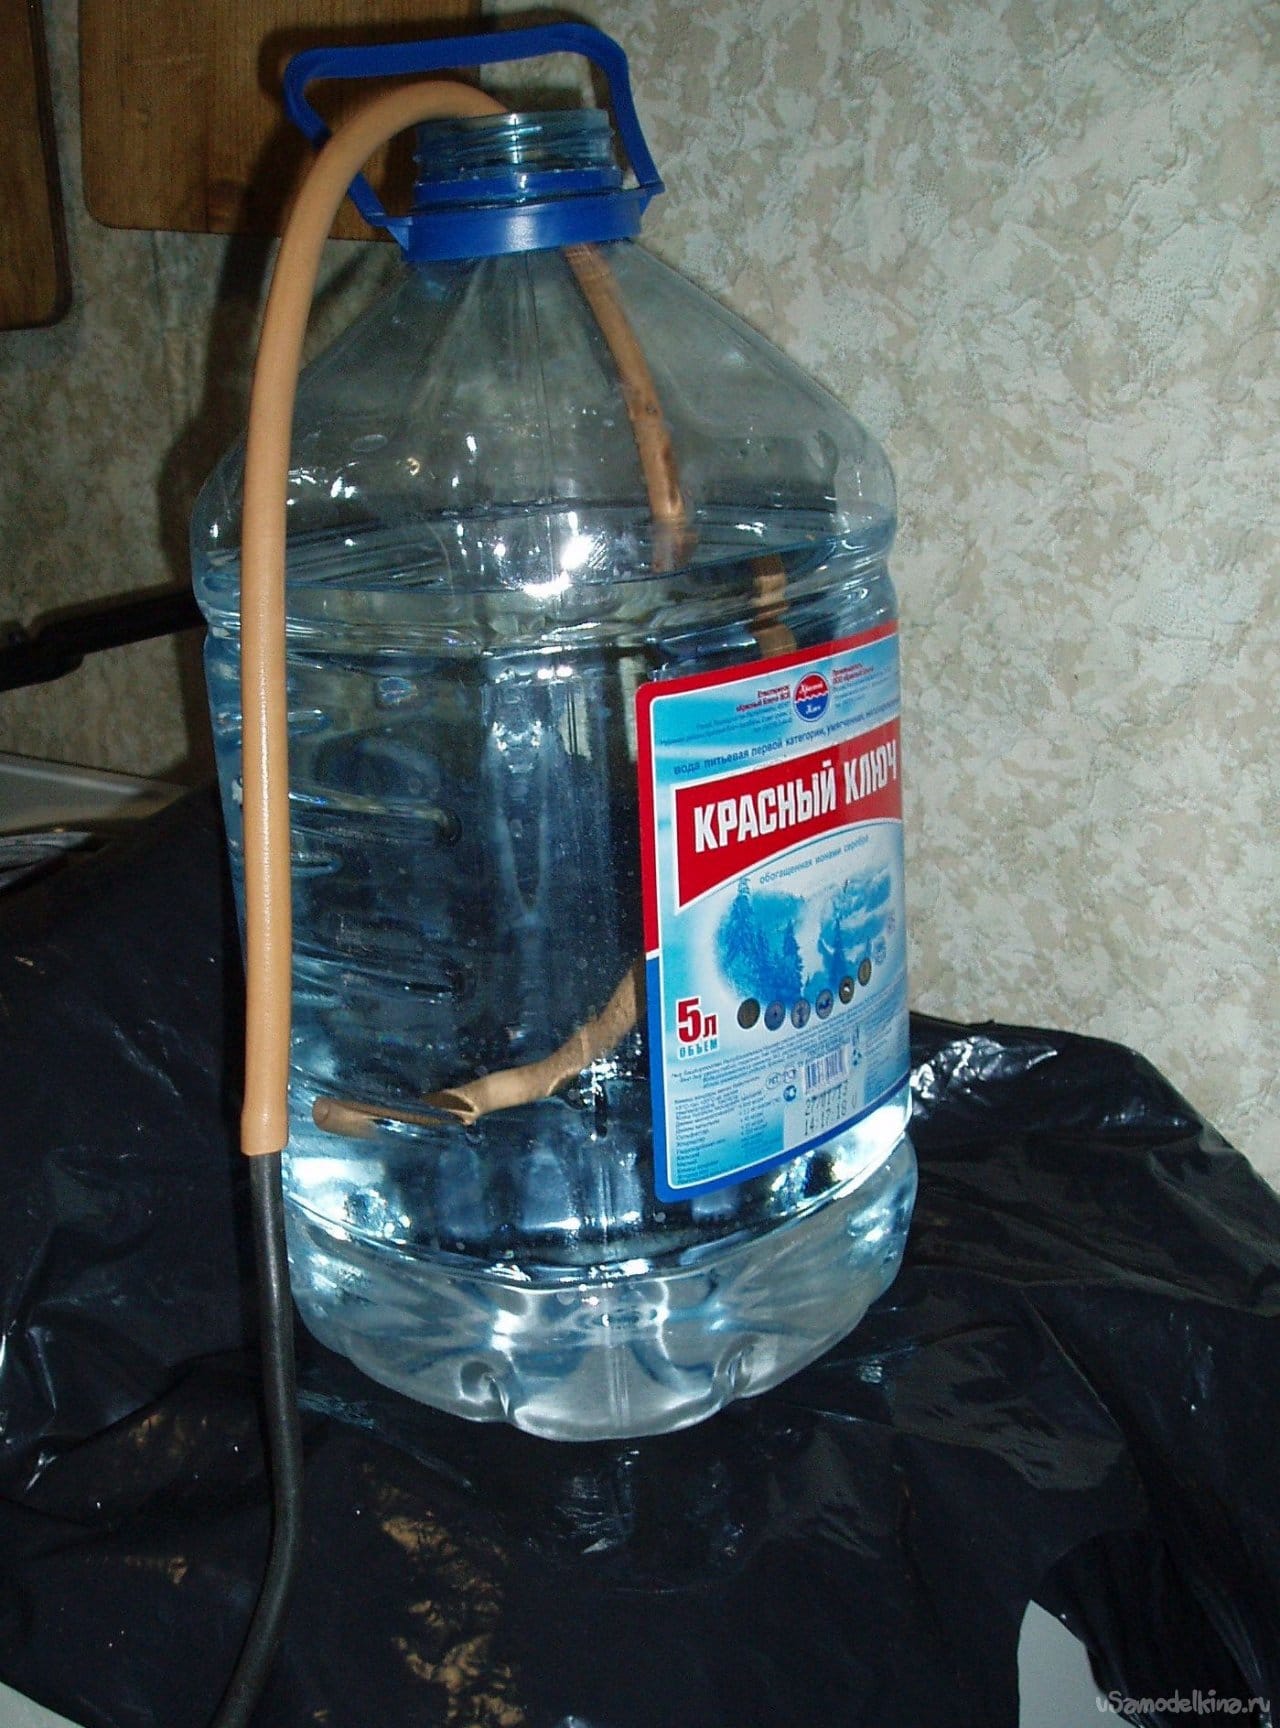 Рецепт вода замороженная. Замороженная вода в бутылке. Бутылка для заморозки воды. Талая вода в бутылках. Фильтрация воды вымораживанием.